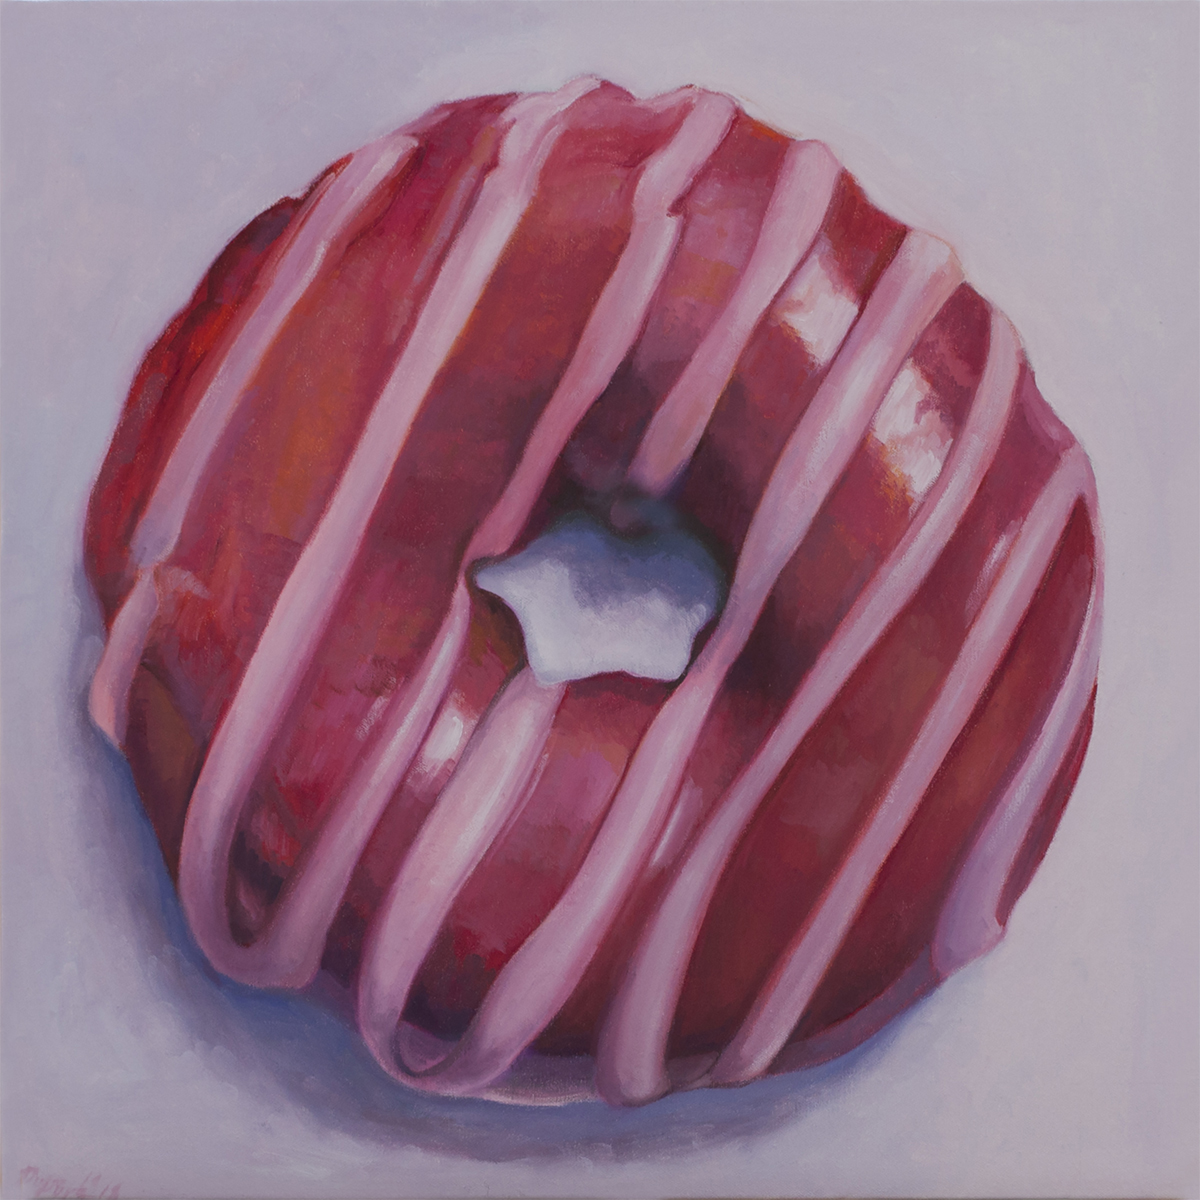 Glazed Donut with Stripes